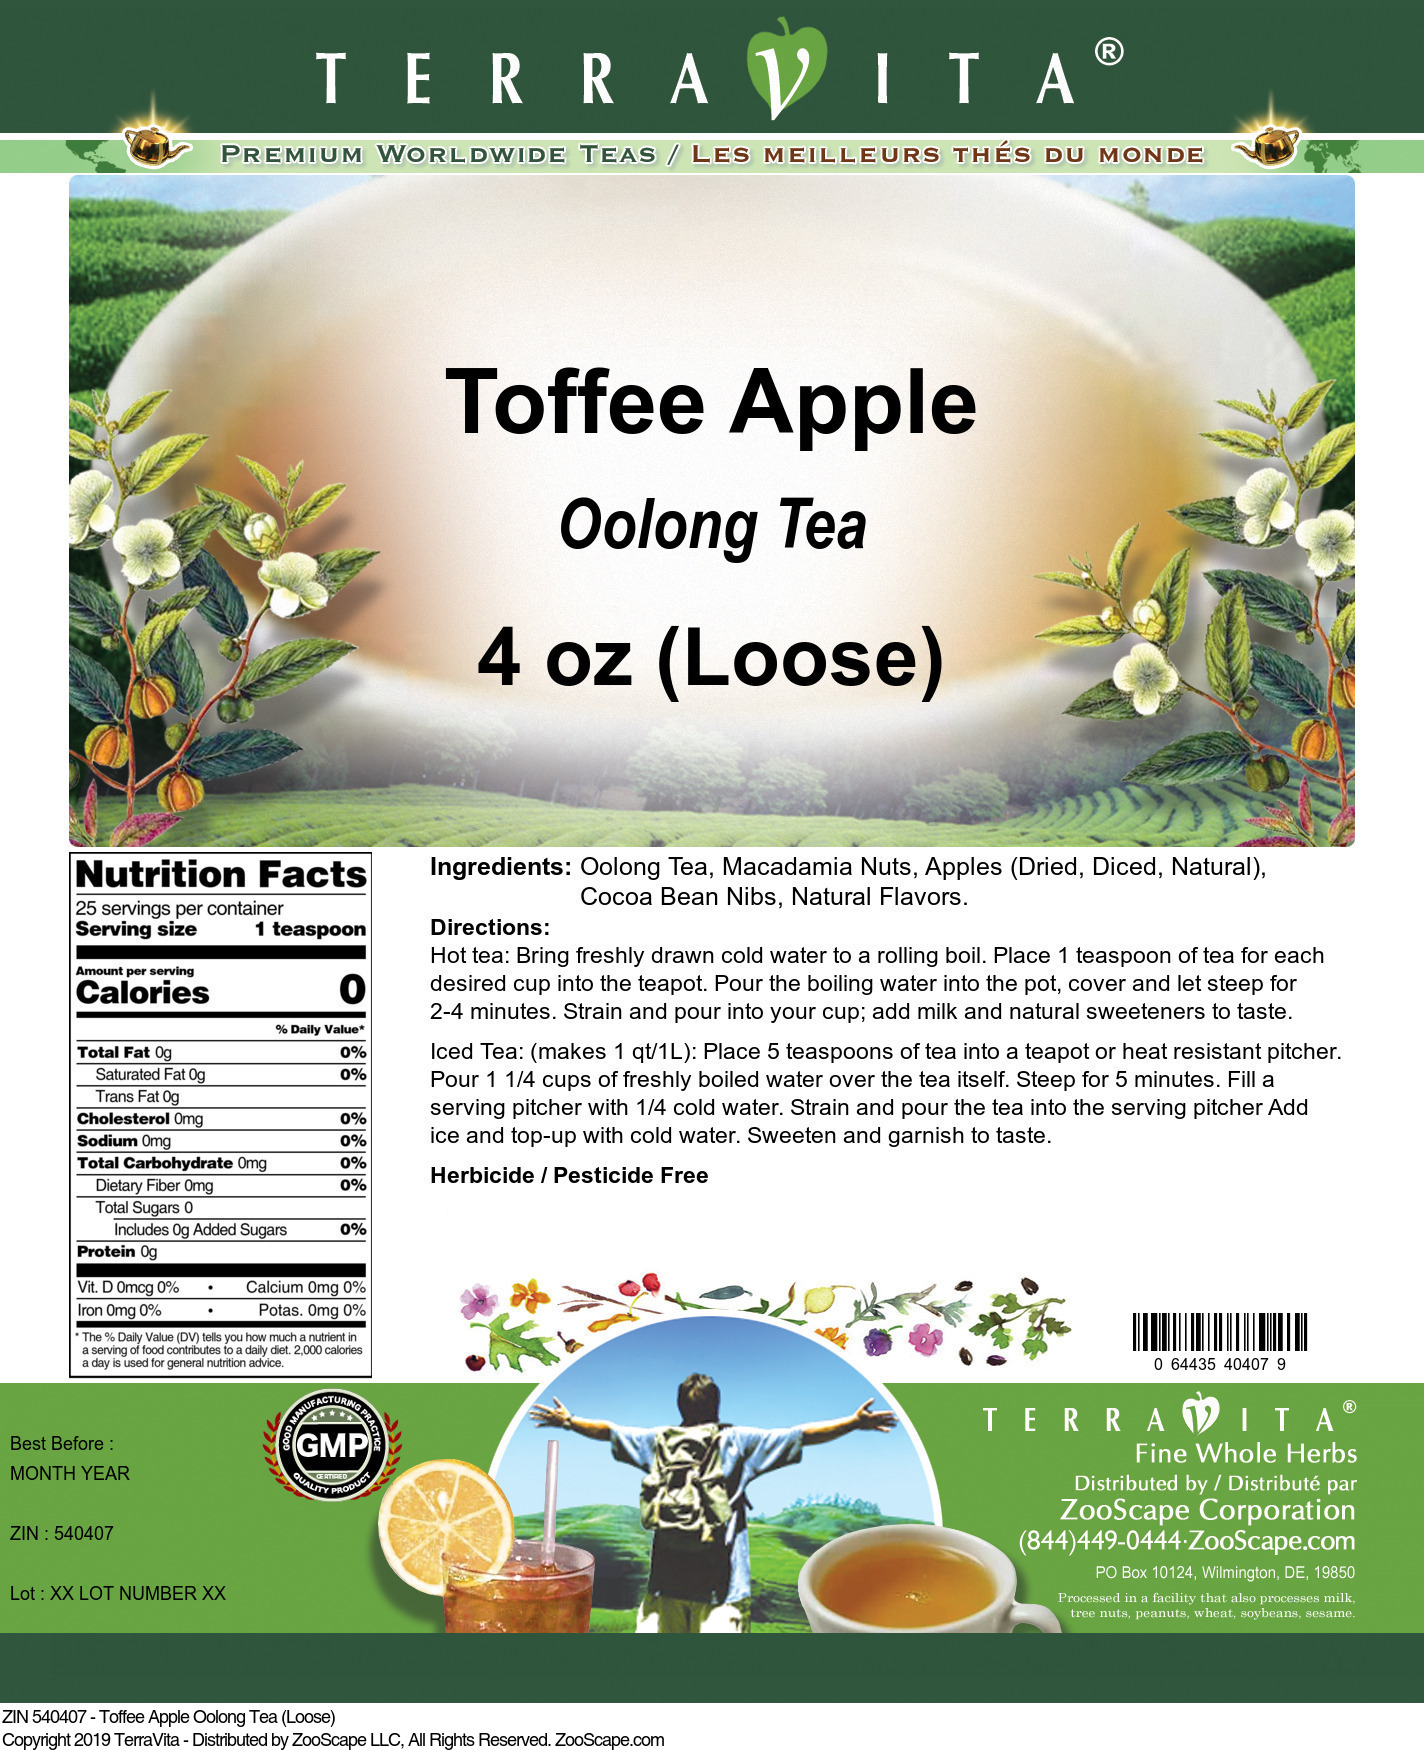 Toffee Apple Oolong Tea (Loose) - Label